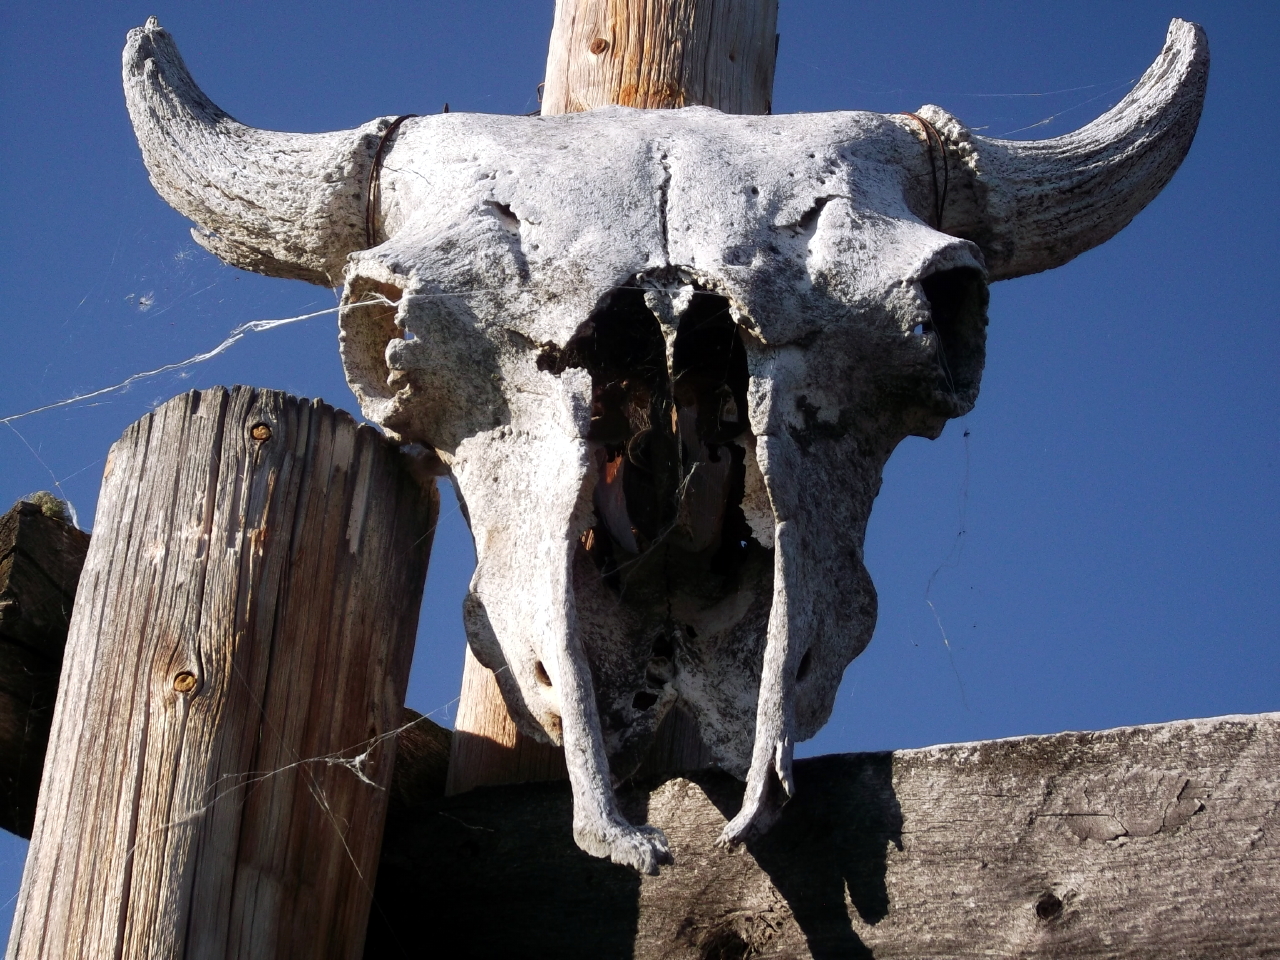 First Place Ruby Winner – “Buffalo Skull” by Jimmy-Joe Drybones